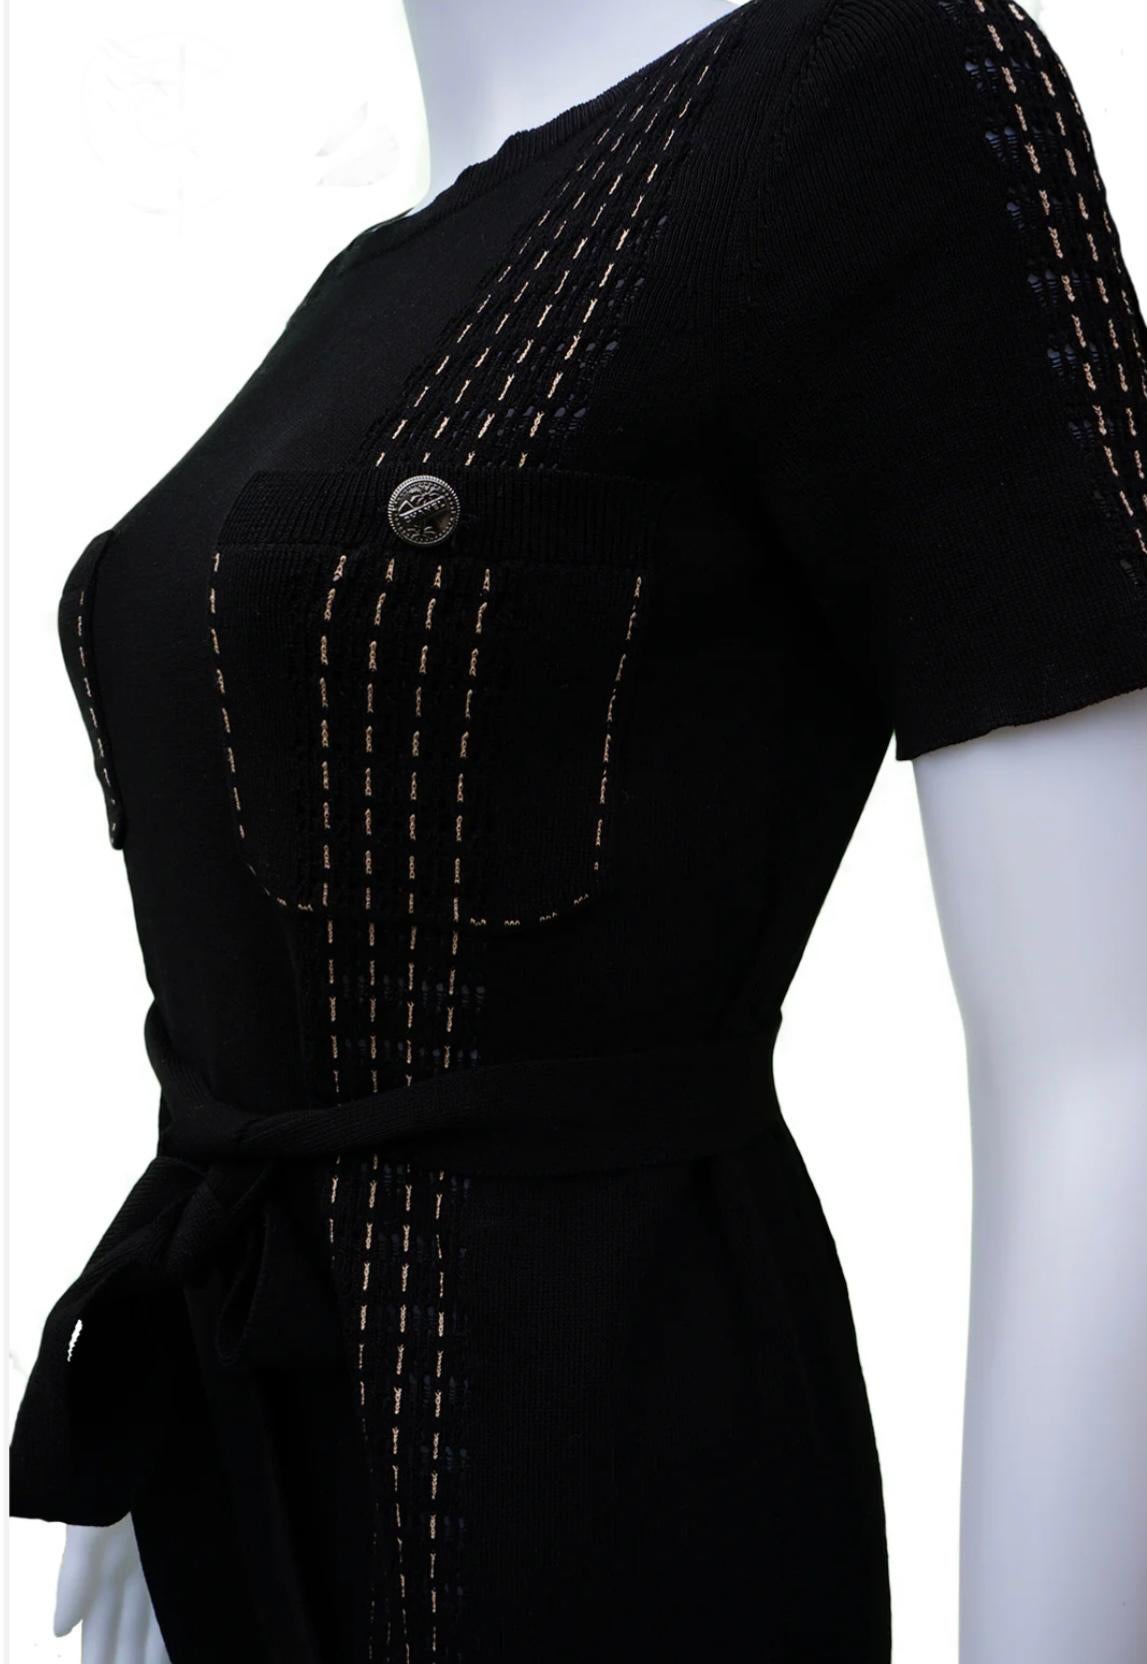 Fabelhaftes Chanel kleines schwarzes Kleid mit Gürtel aus 2017 Cruise Collection Paris/Kuba
-CC Logo-Tasten mit Handflächen 
Größenangabe 40 FR, Zustand ist tadellos.